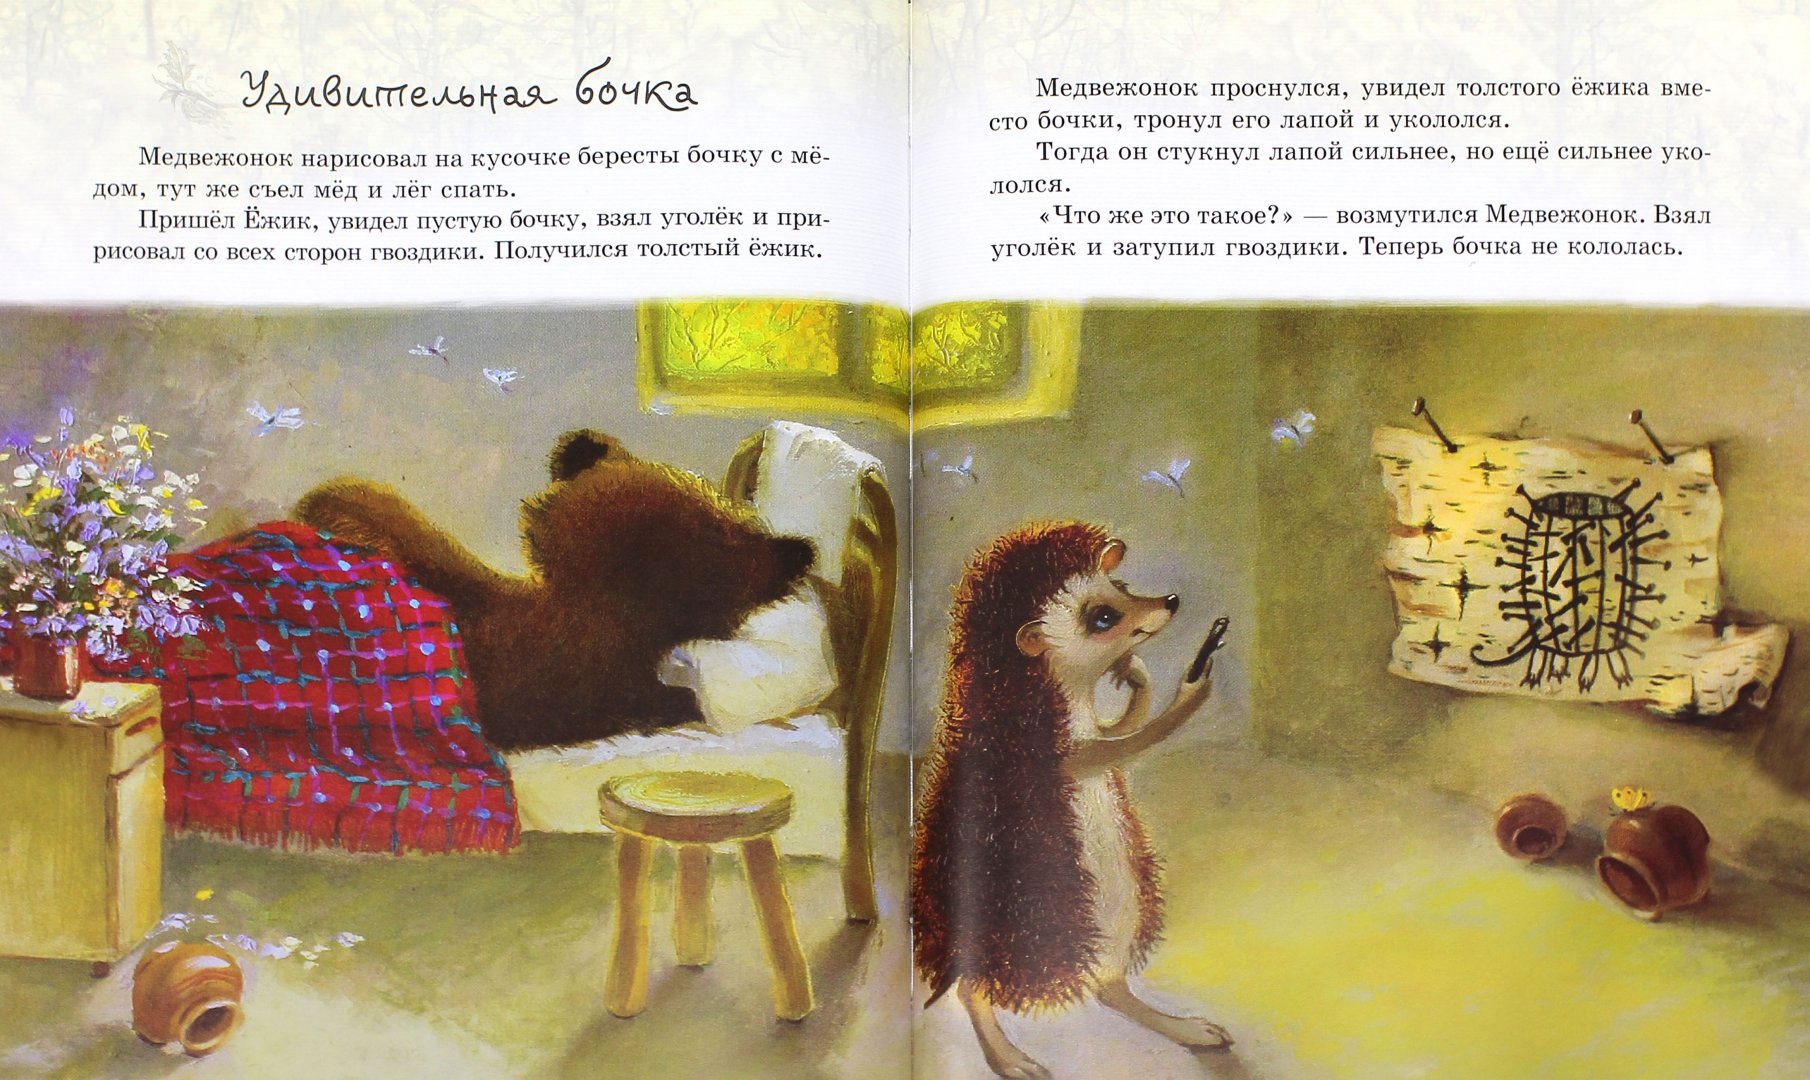 Иллюстрация 1 из 2 для Ежик в тумане. Сказки о настоящем - Сергей Козлов | Лабиринт - книги. Источник: Лабиринт